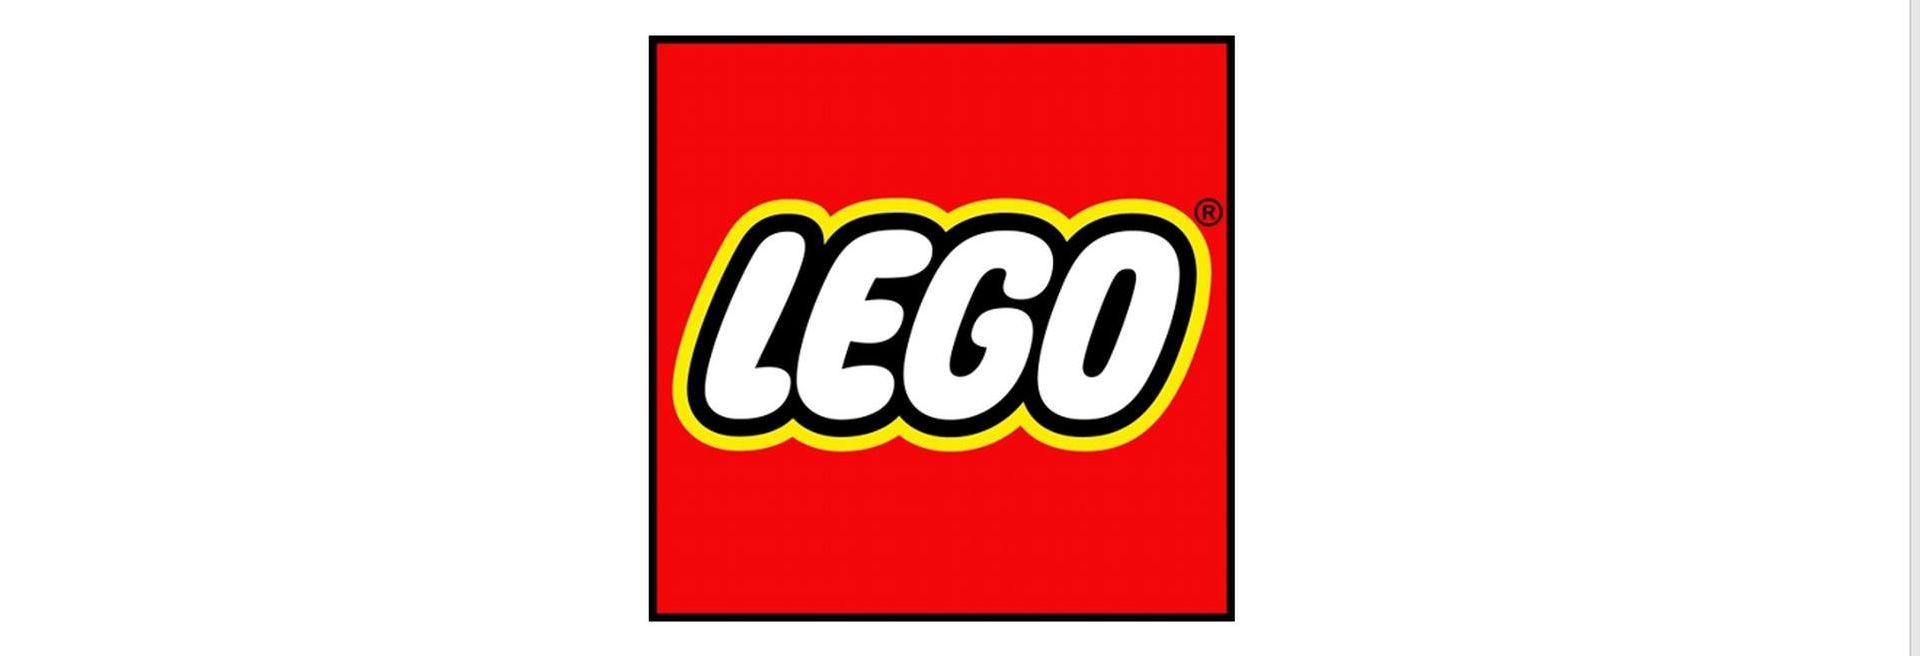 Nagyszabású bővítésbe kezd a LEGO nyíregyházi gyárában - VIDEÓRIPORT